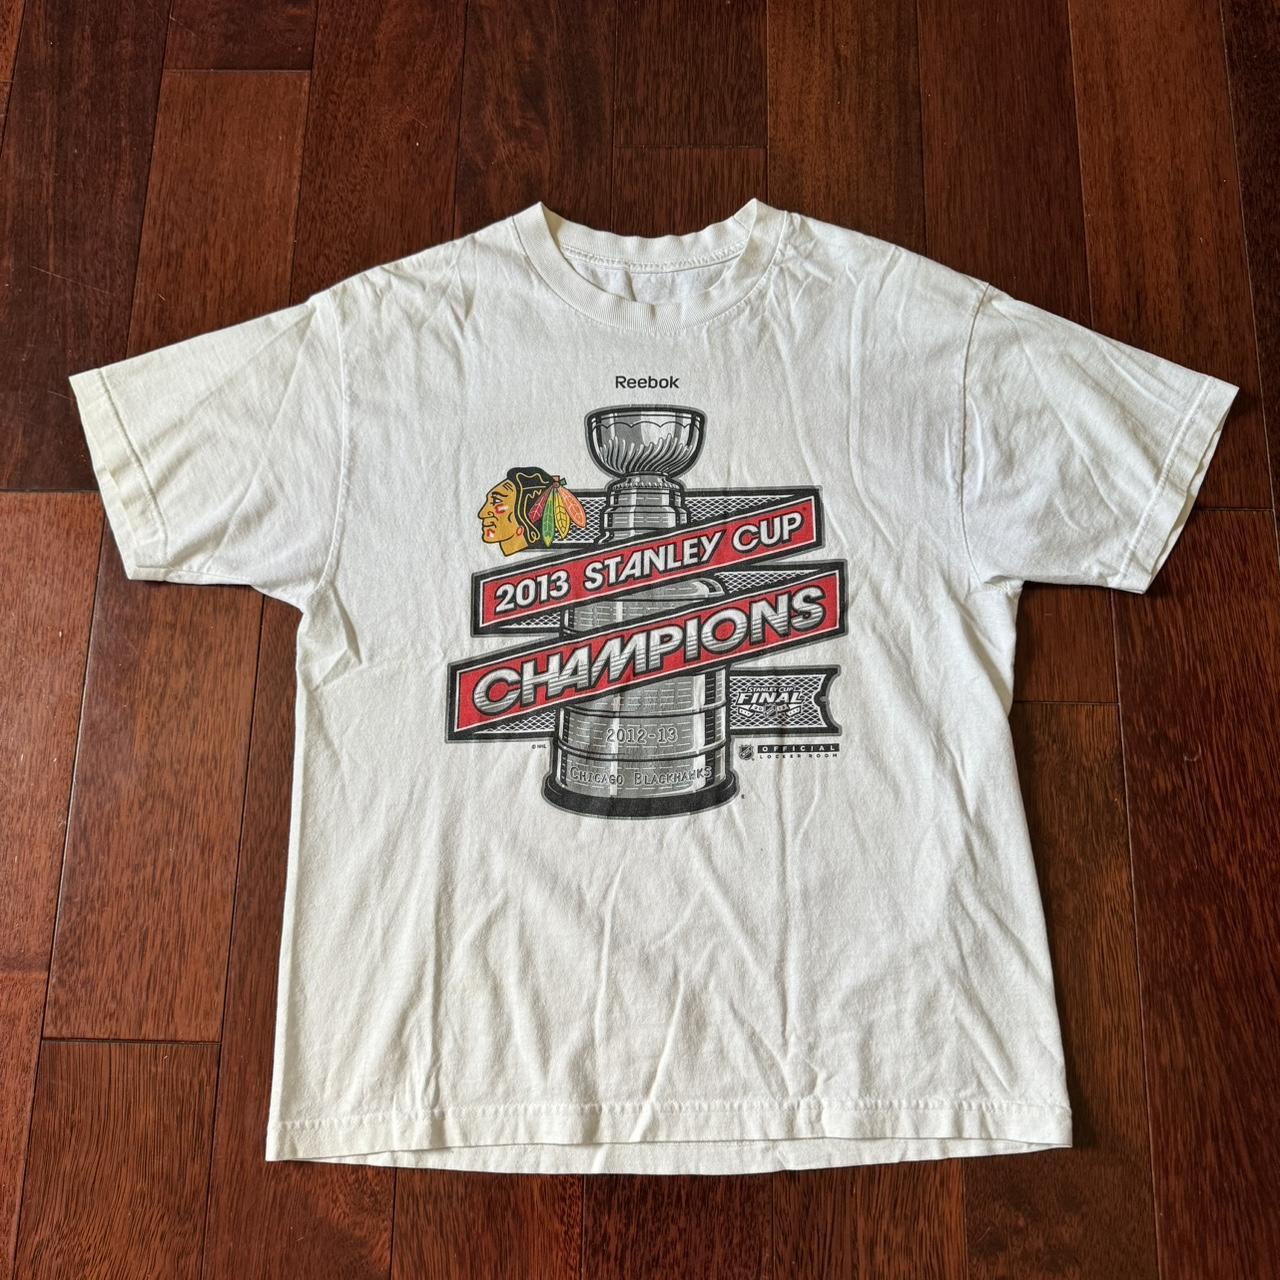 Chicago Blackhawks shirt. NHL hockey player promo - Depop